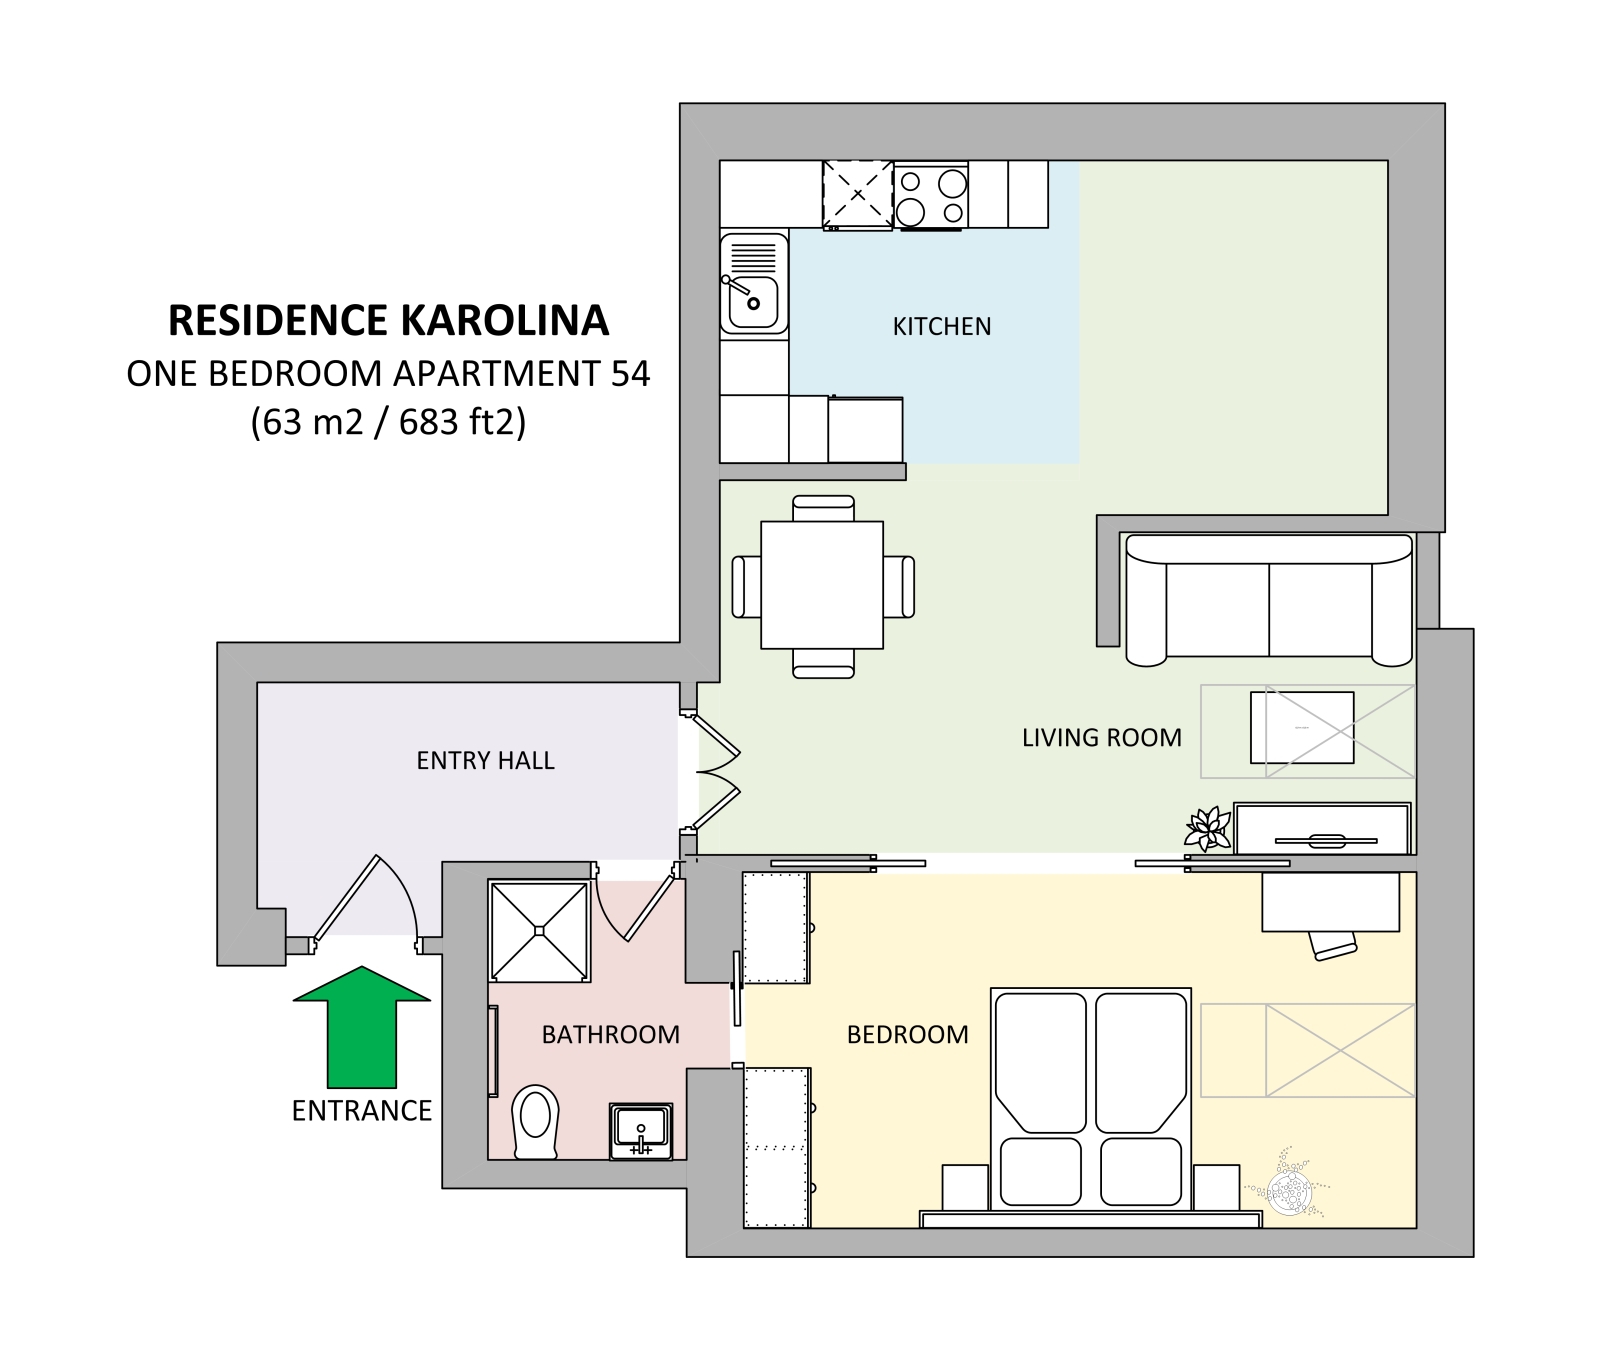 Floorplan of apartment 54 in Residence Karolina in Prague